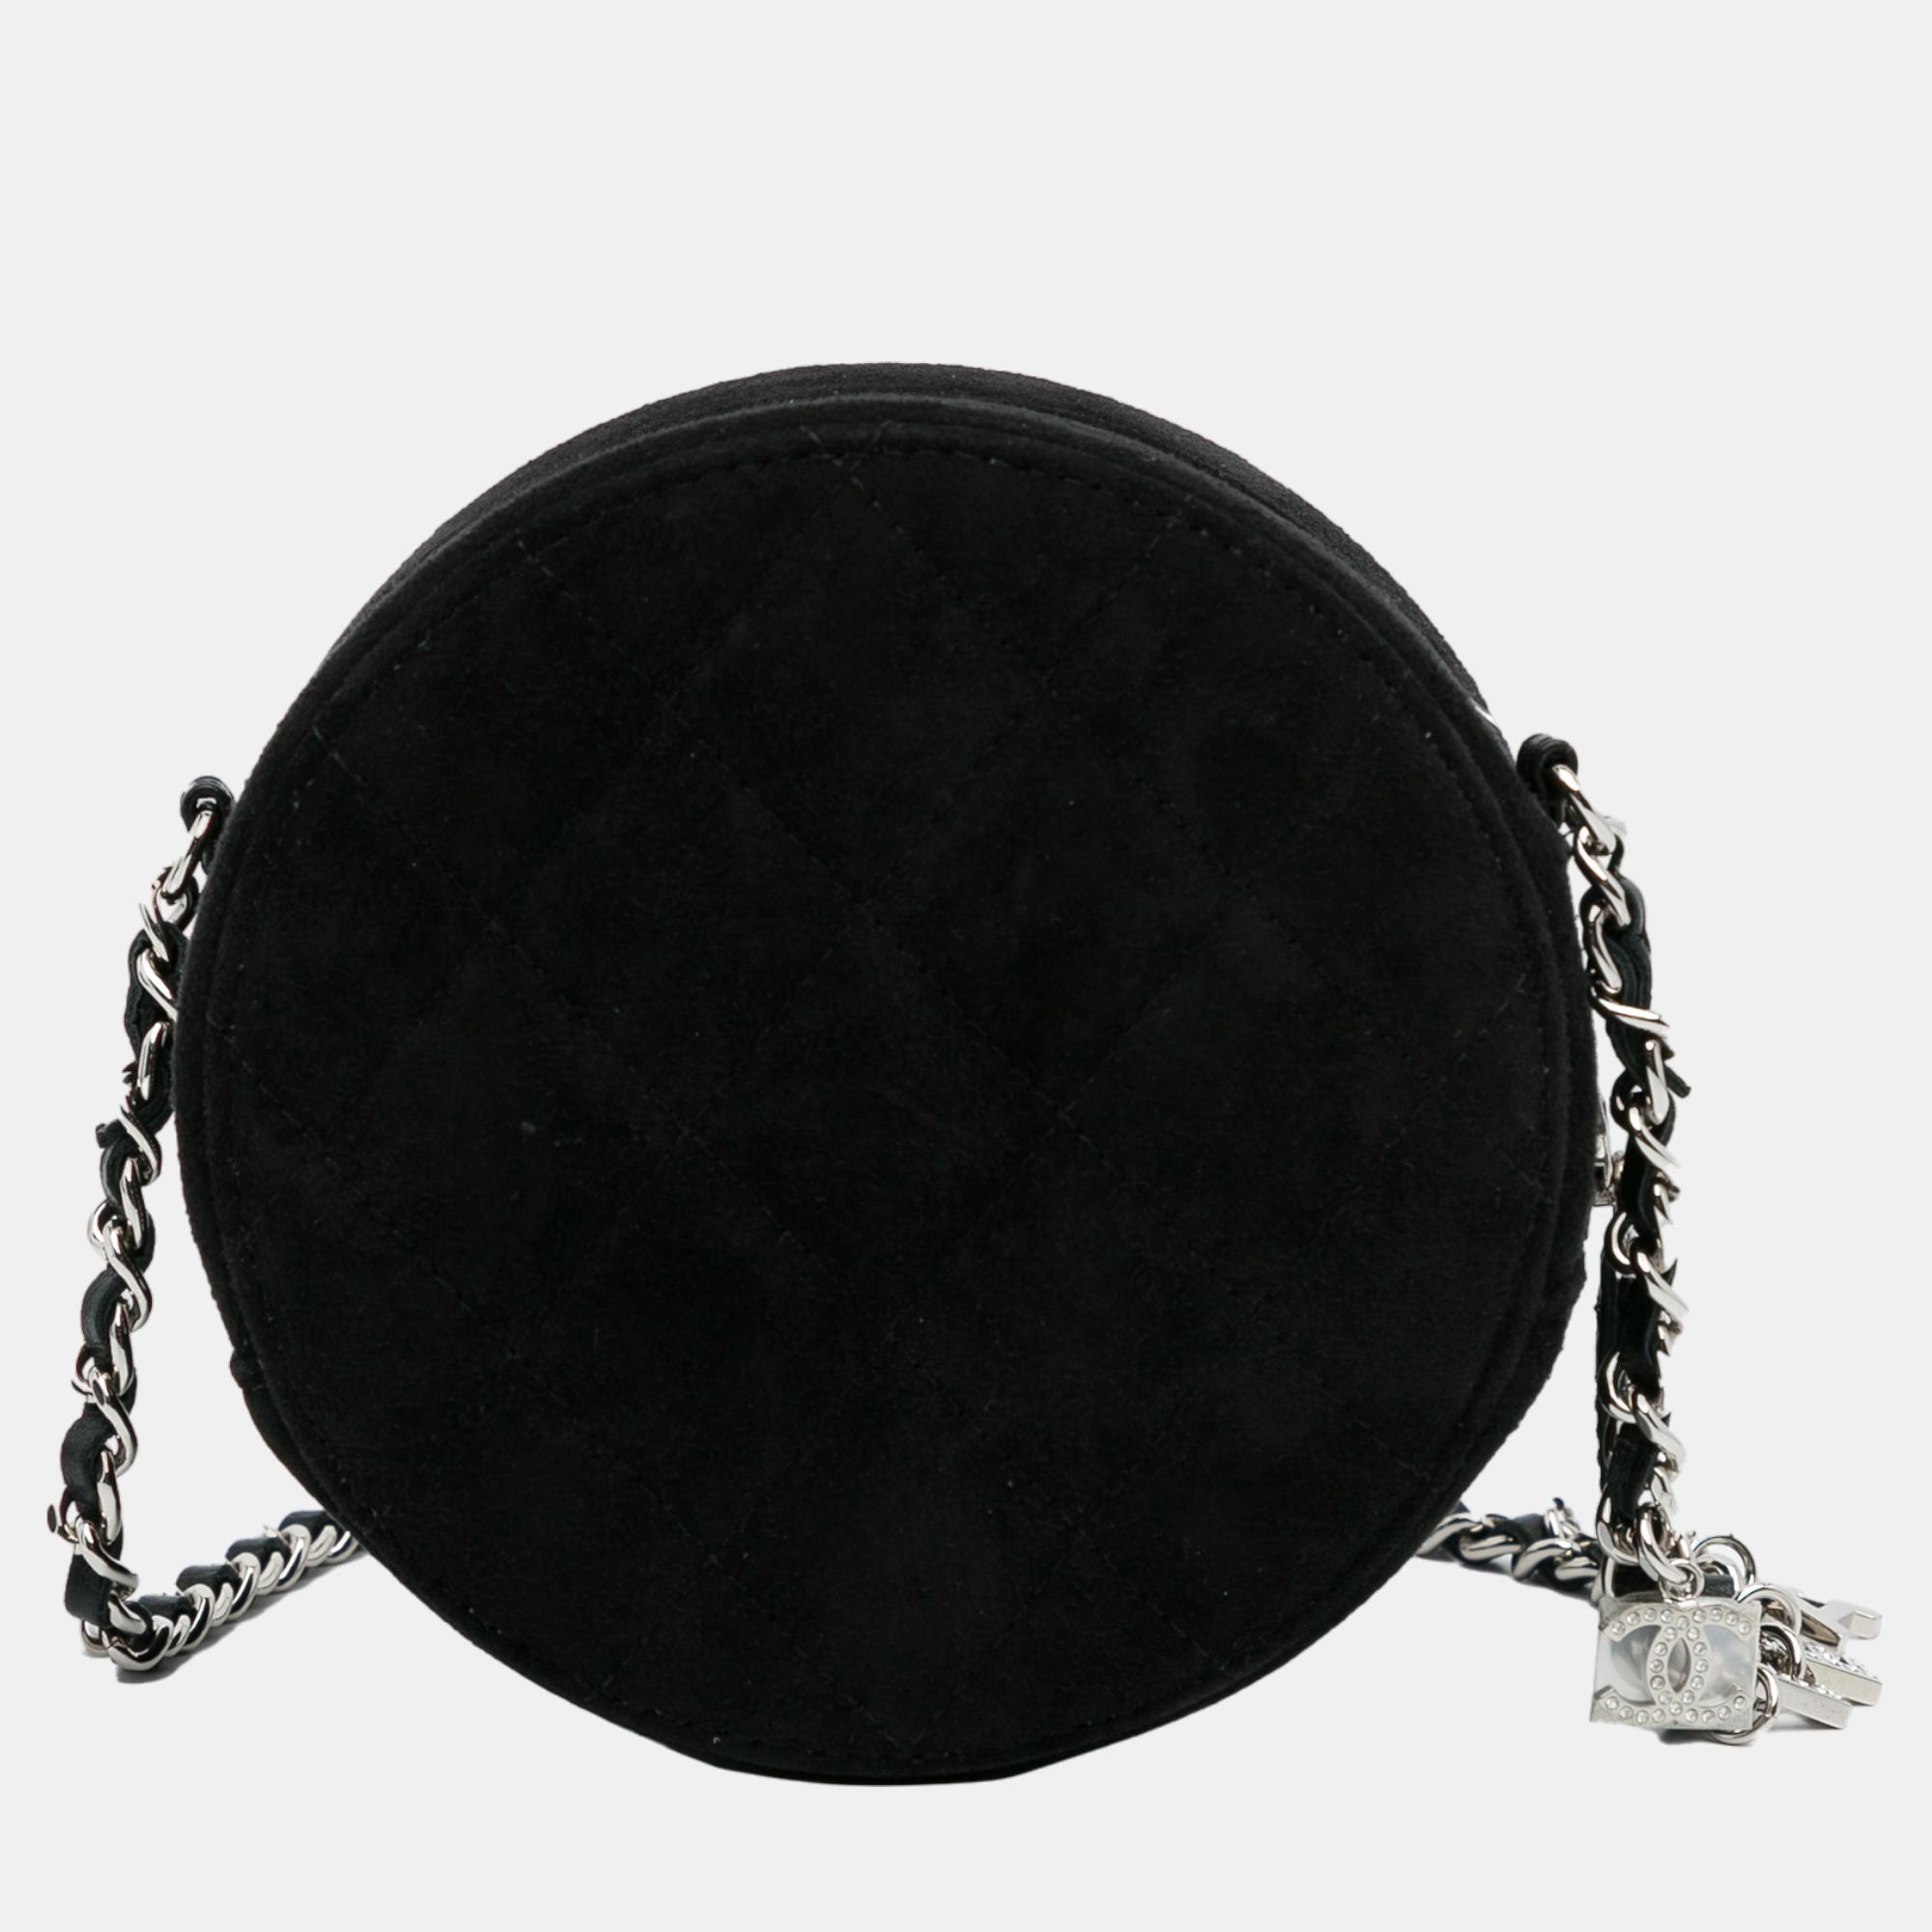 Chanel Black Suede Cocostellar Round Clutch On Chain